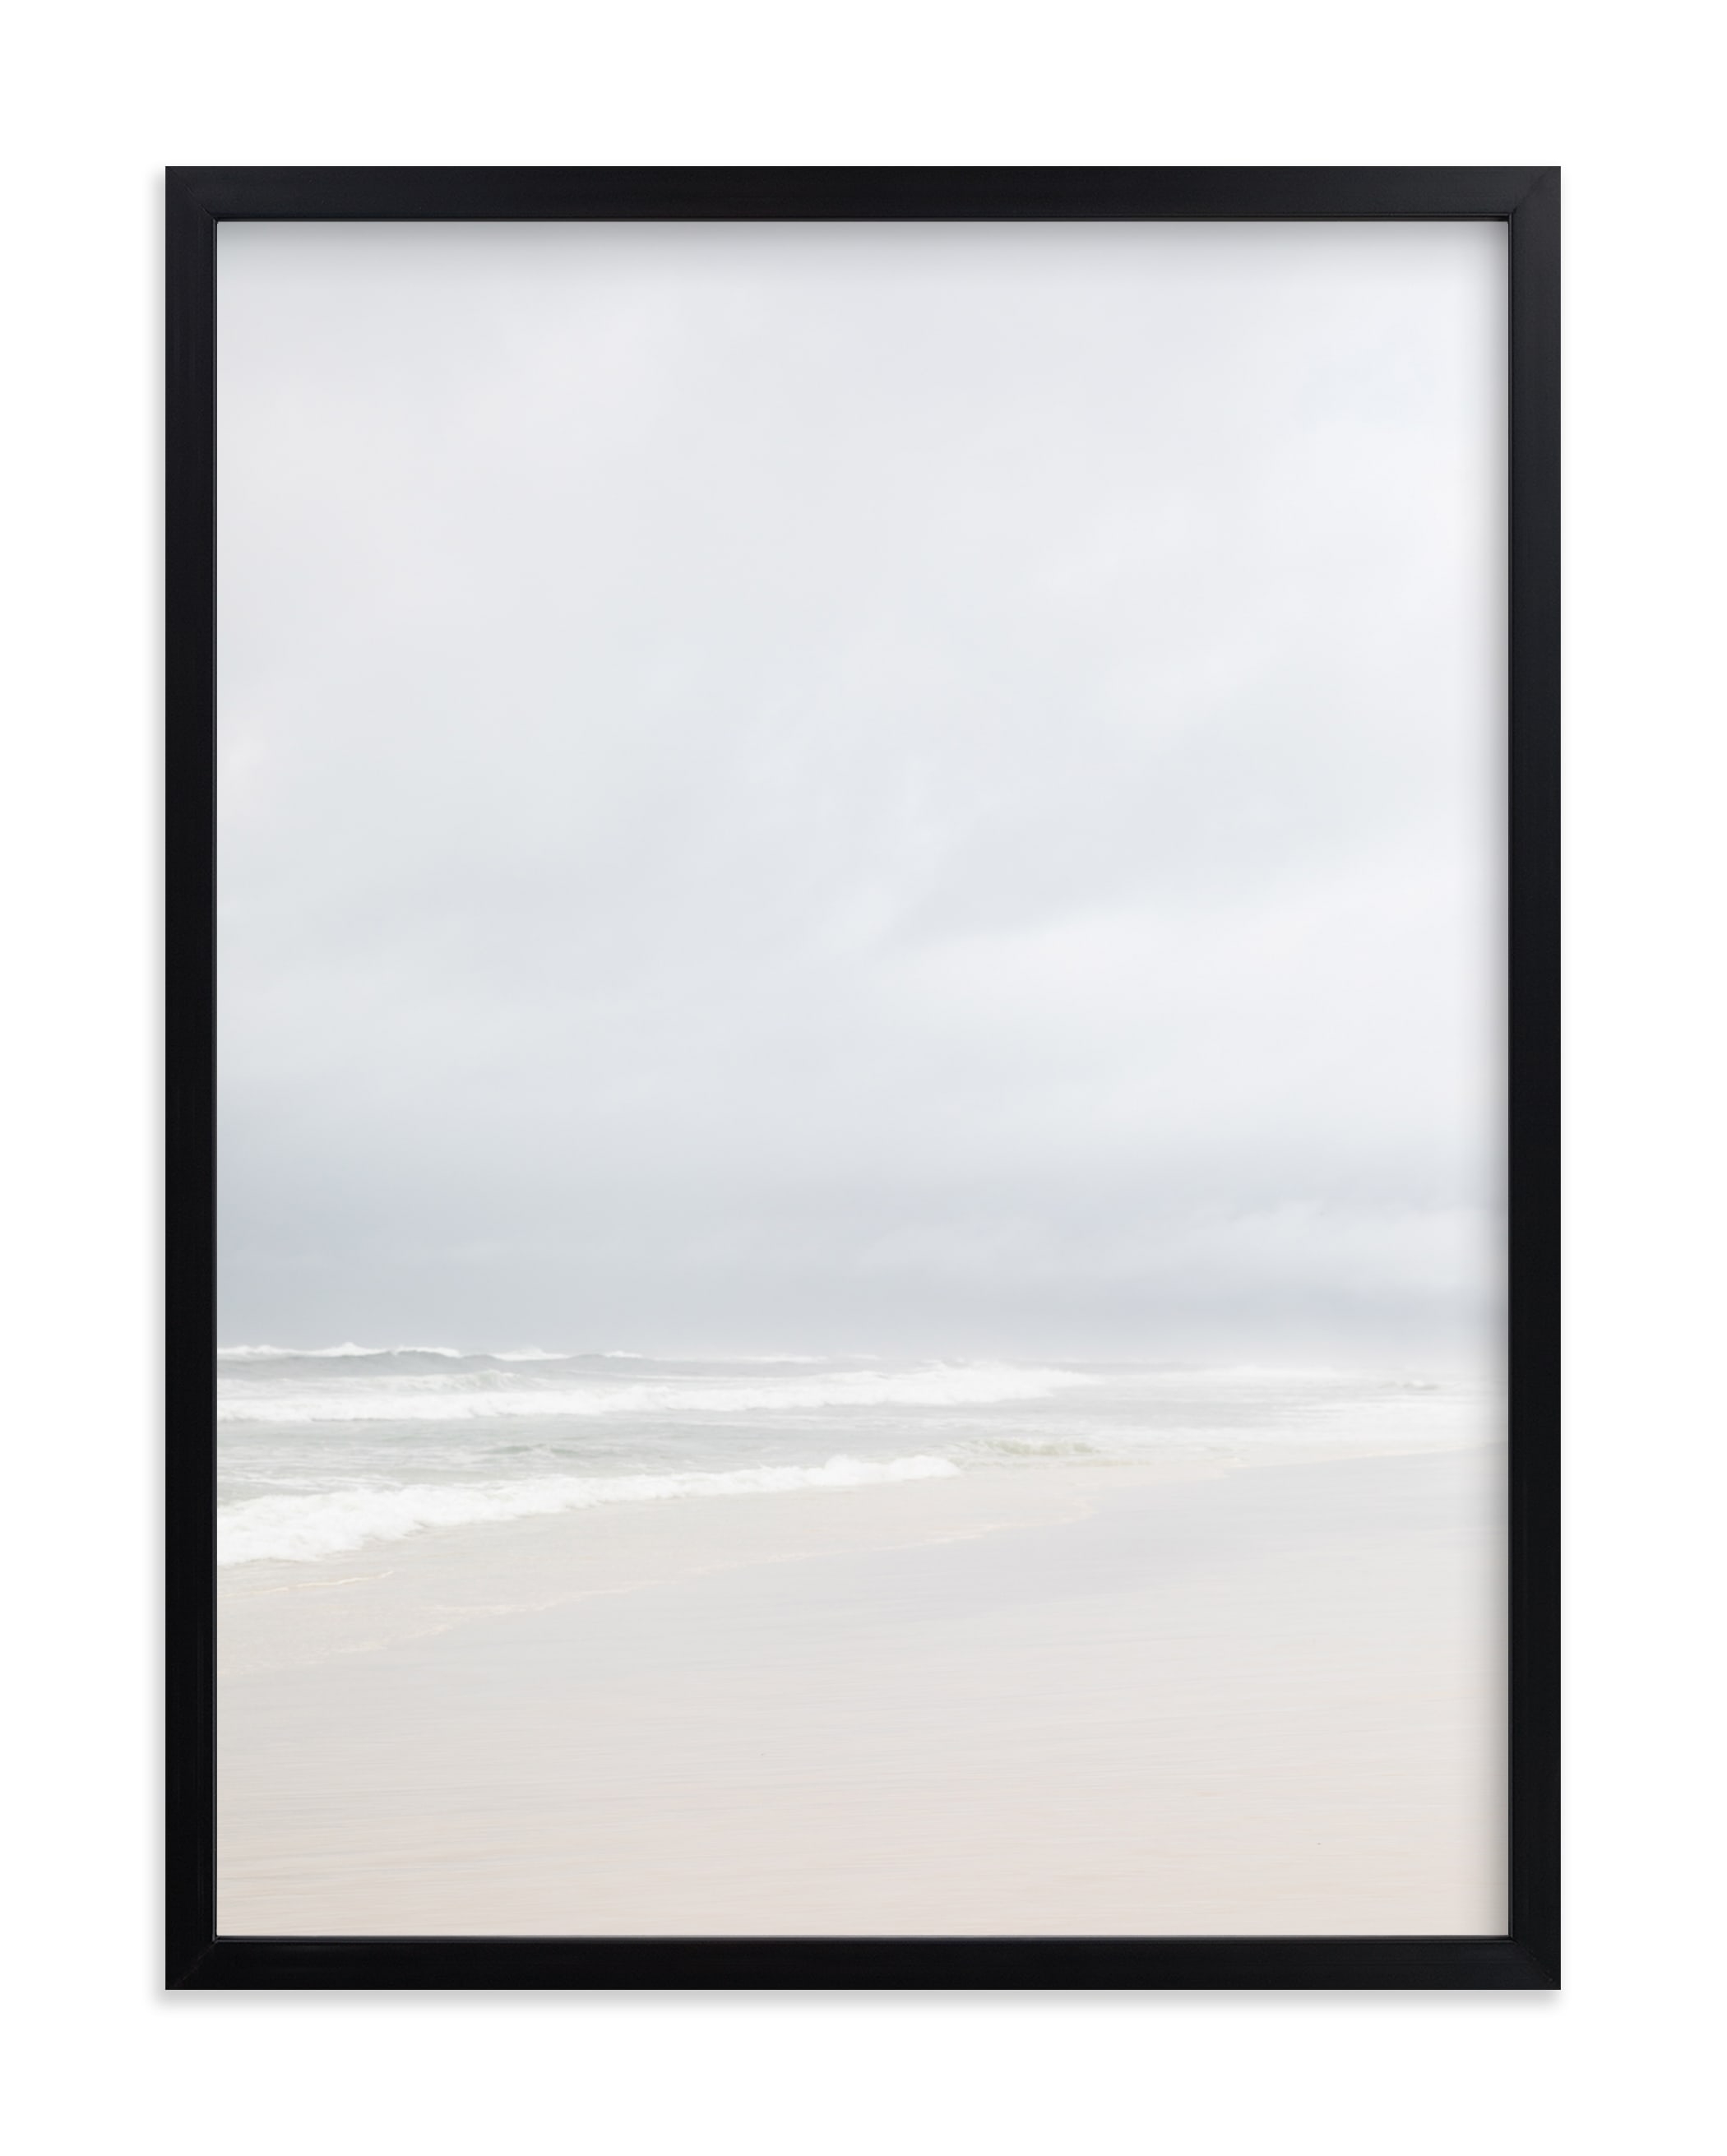 Coastal Vibes II Limited Edition Fine Art Print - Image 0